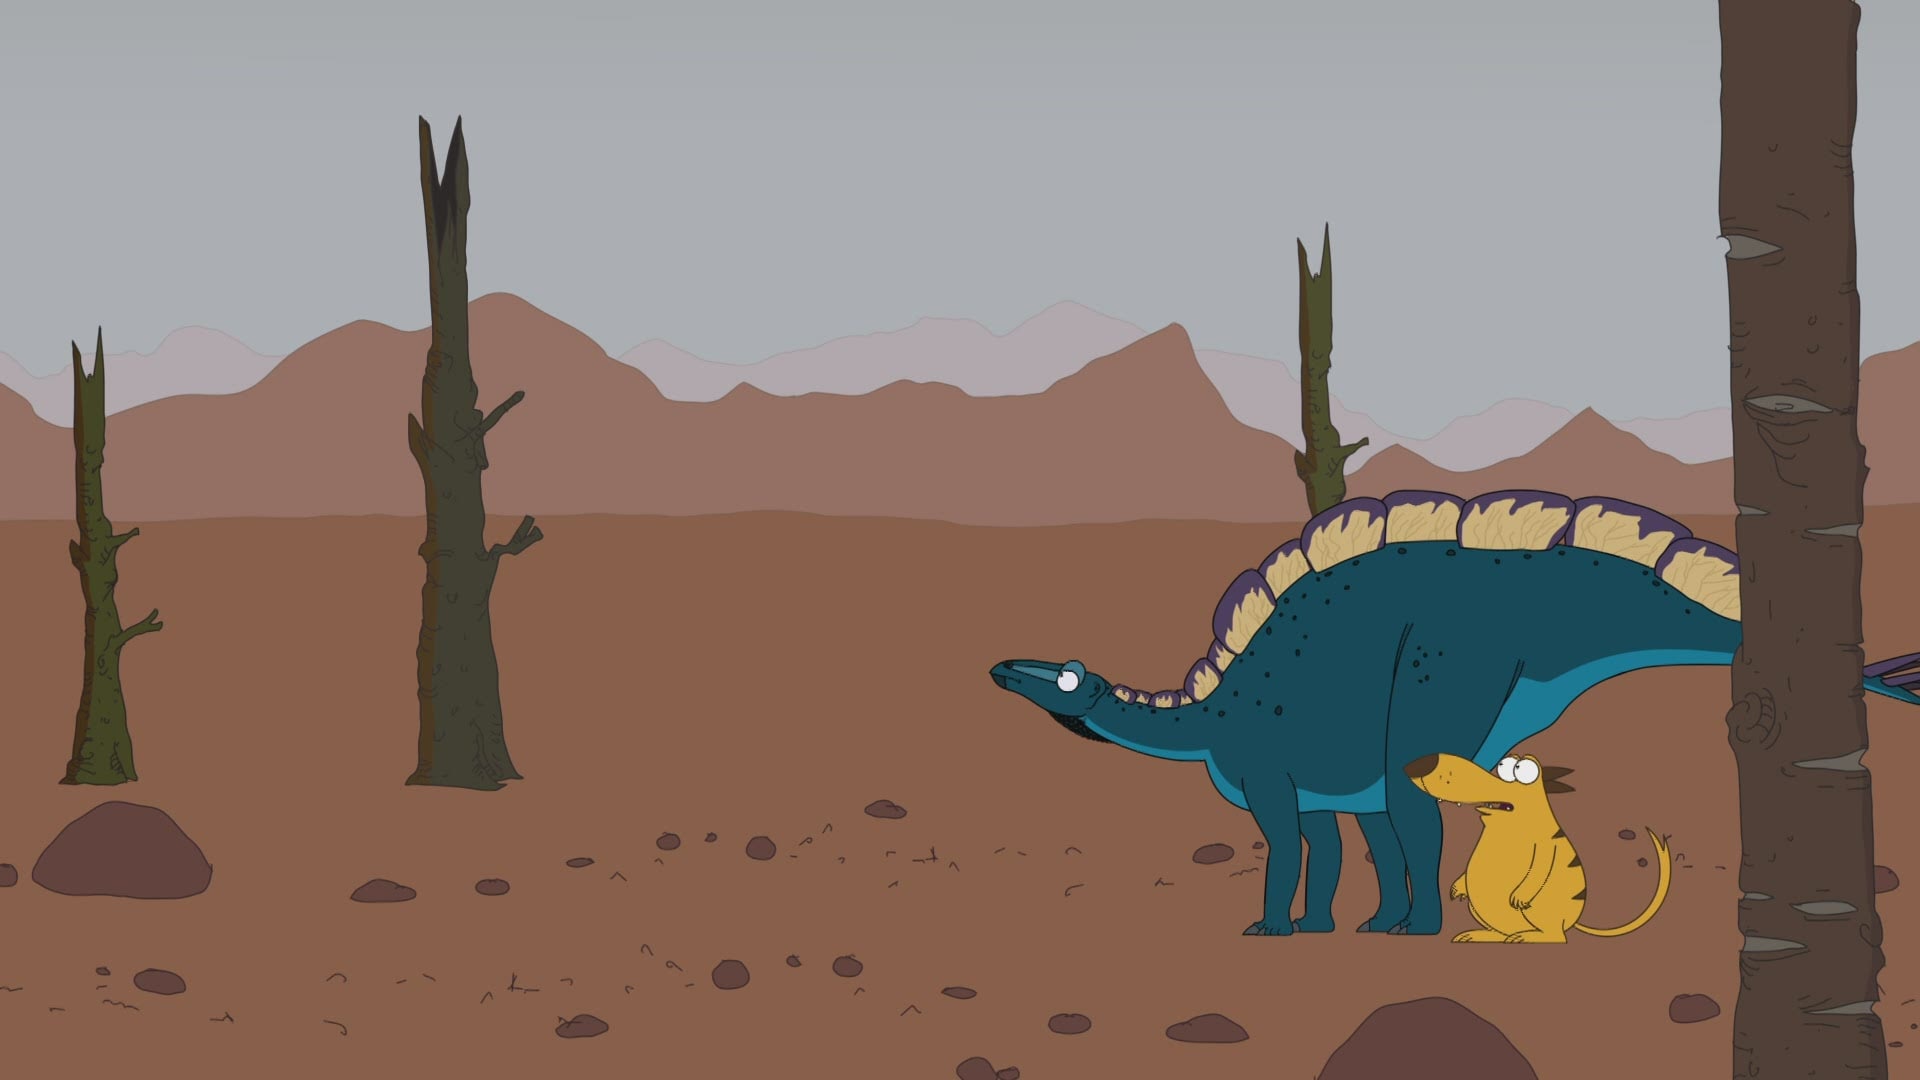 W wie Wuerhosaurus